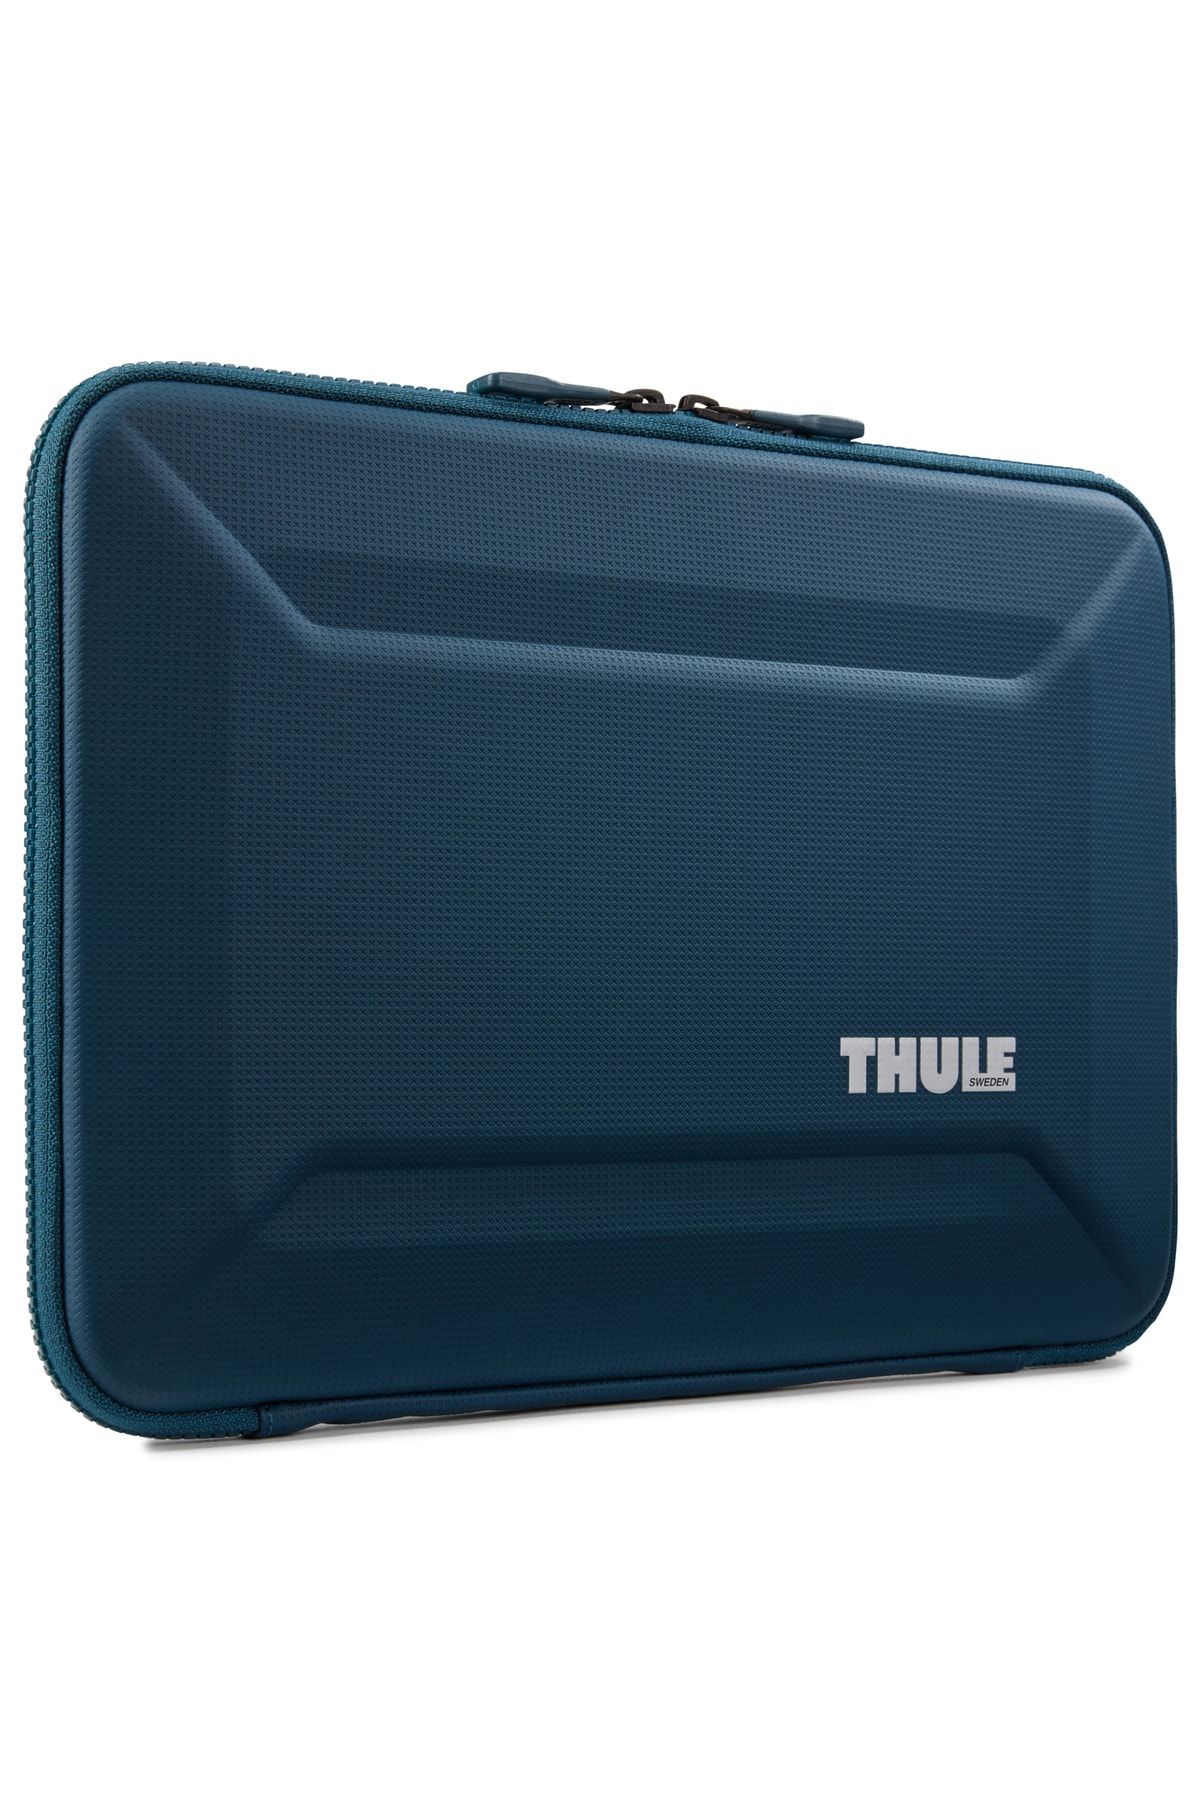 Thule Gauntlet 4 Macbook Sleeve 13"-14" - Blue